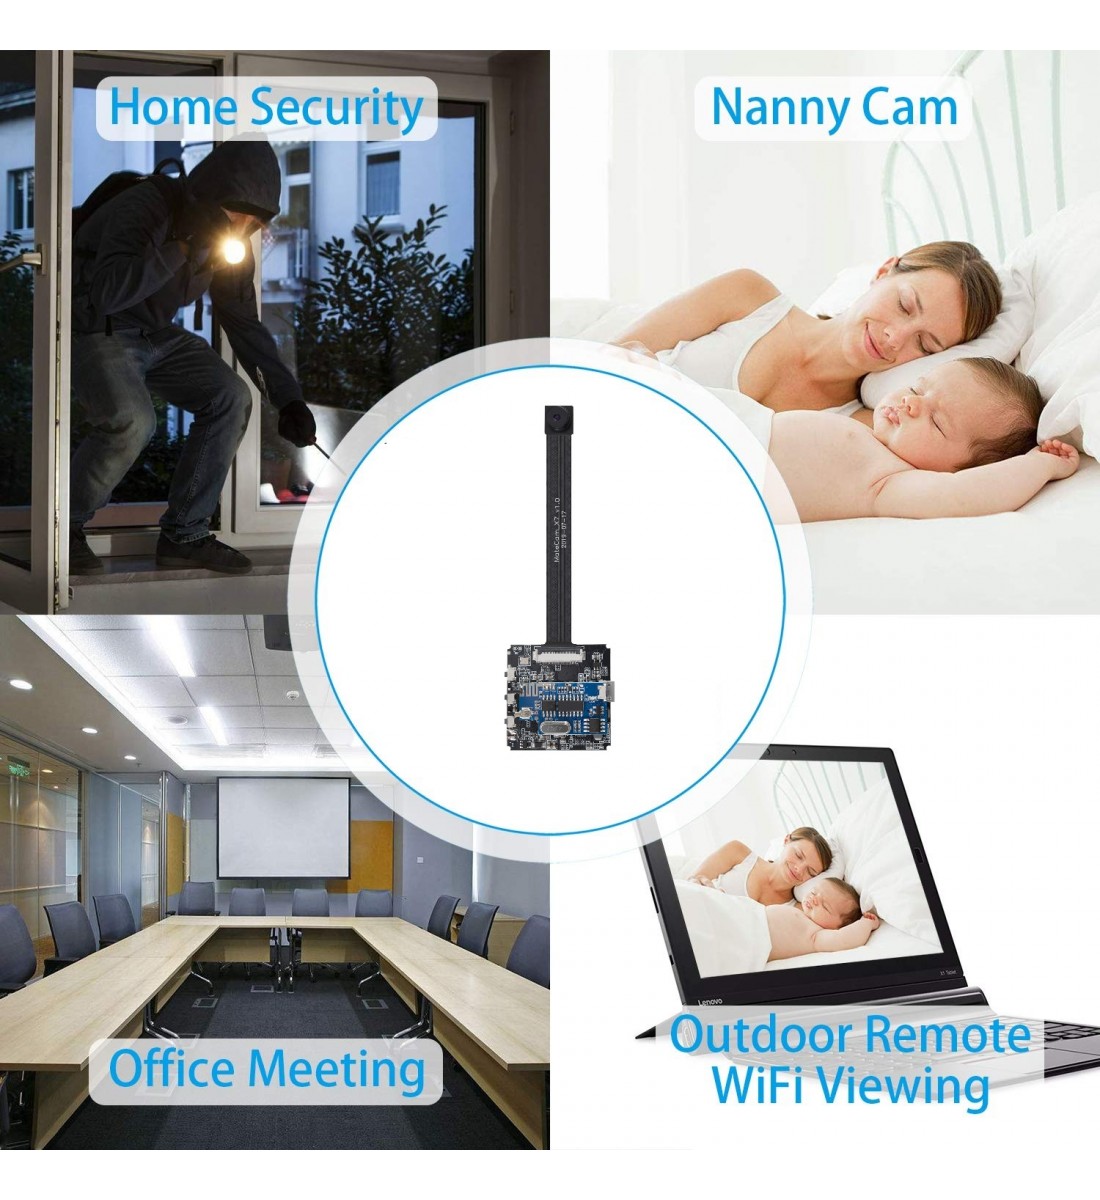 Comercio al por mayor 4K Ultra HD WiFi Cámara espía oculta Versión mejorada  Mini cámara Detección de movimiento inalámbrica Niñera Cam hasta 256GB  Video de seguridad Cámara de visión remota Monitor Baby